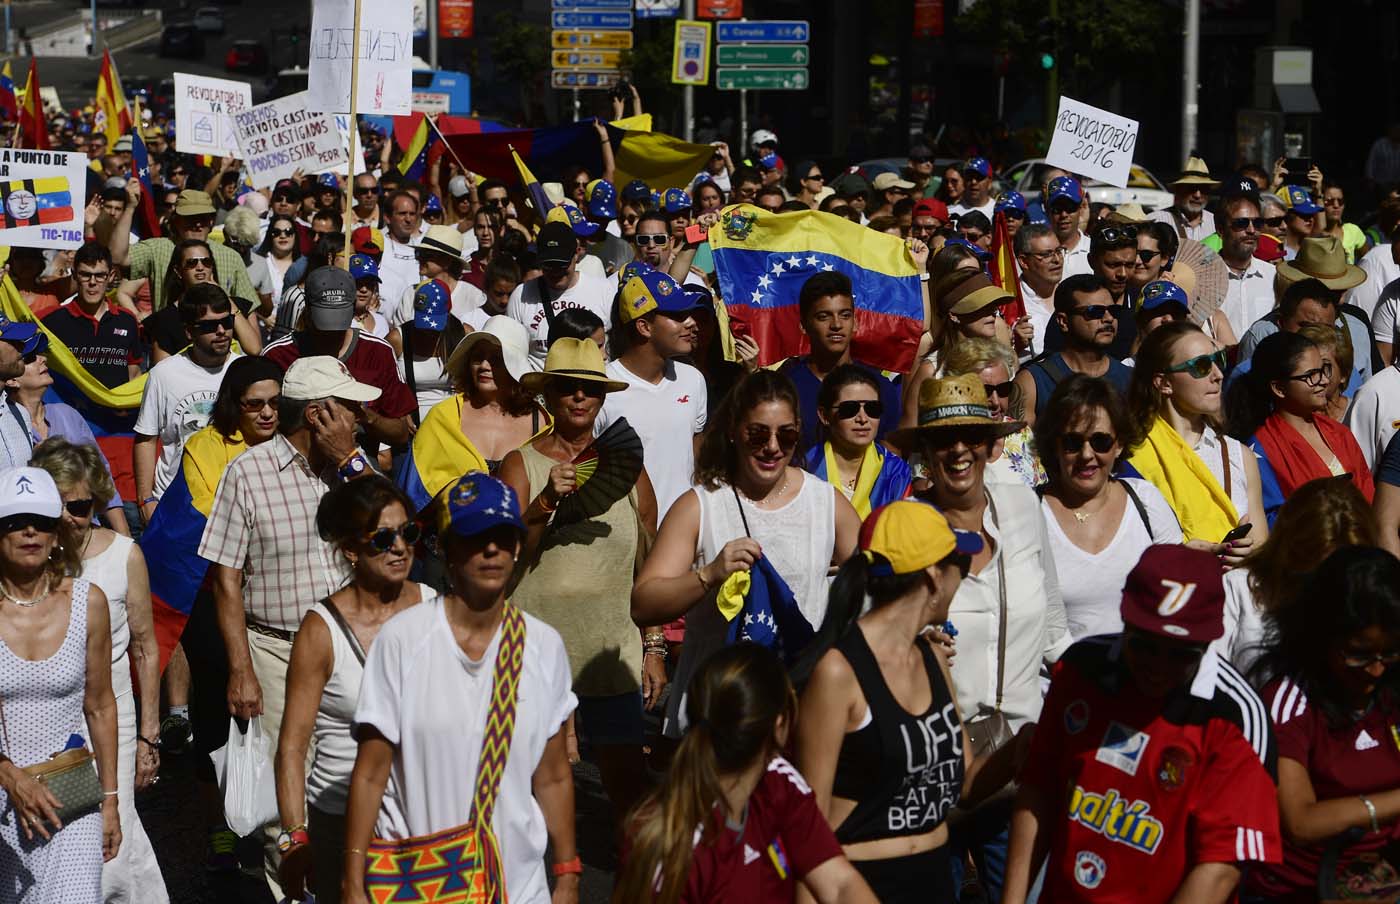 El aluvión de venezolanos y otros focos nuevos de inmigración a España